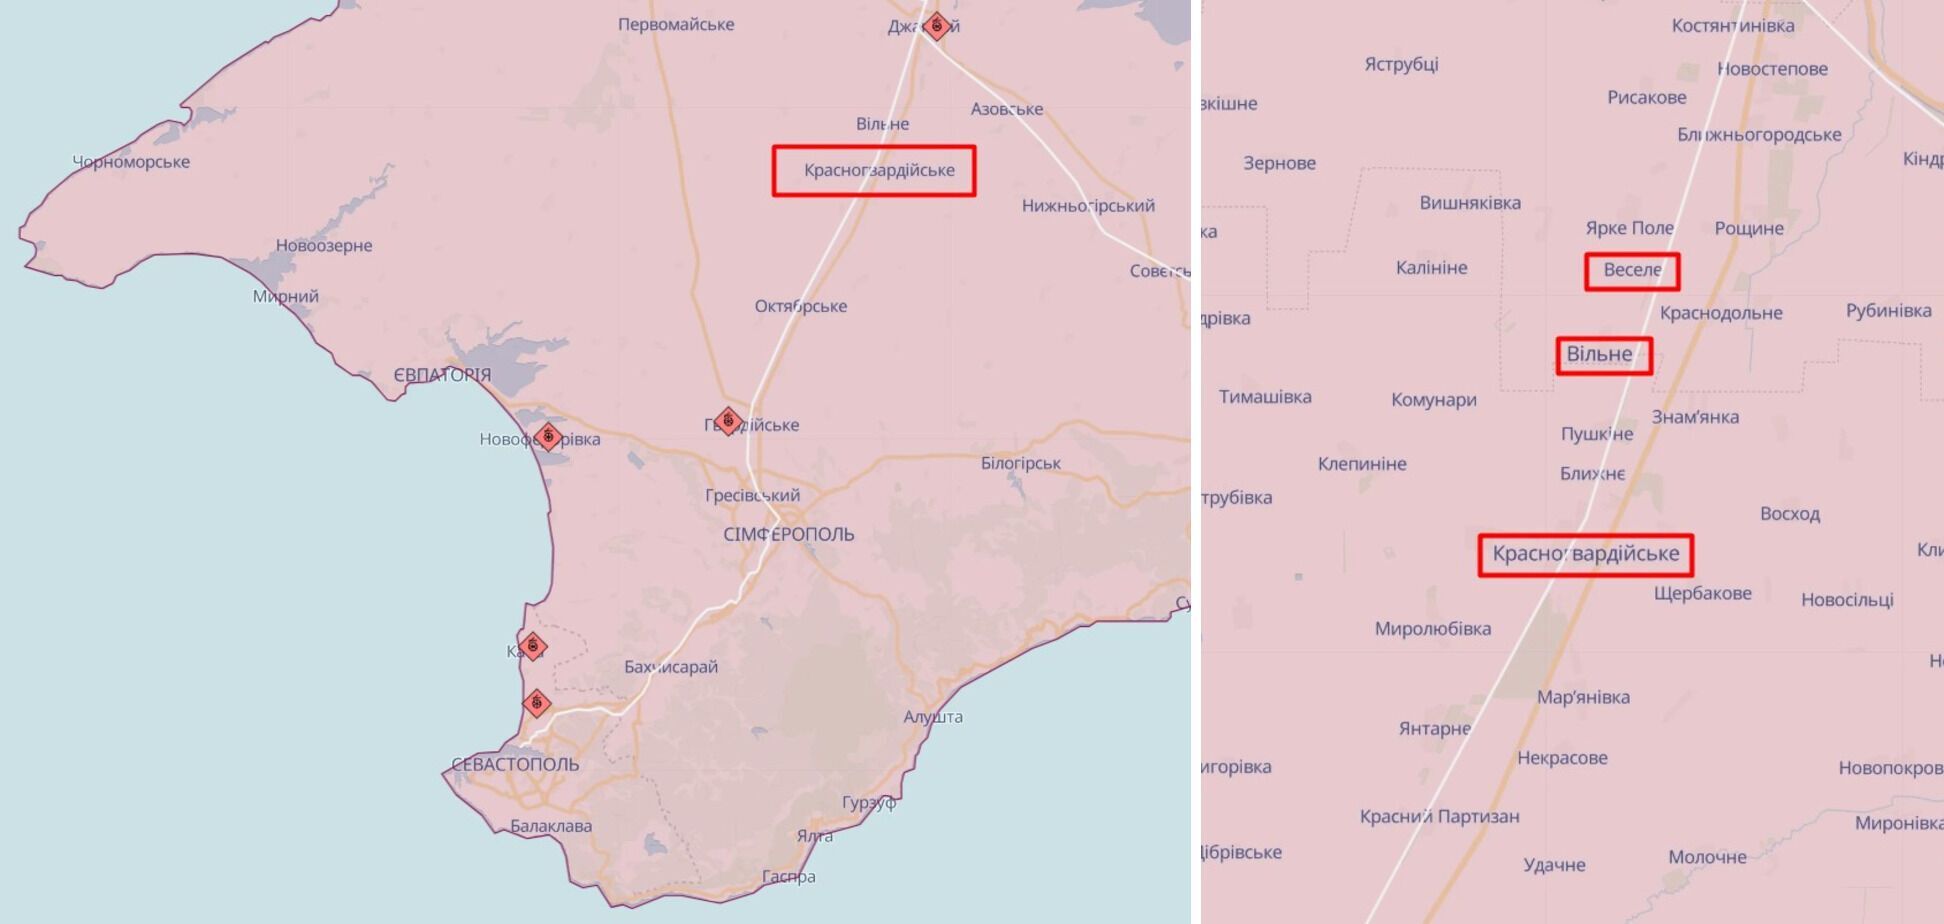 В Крыму утром снова прогремели взрывы: оккупанты заявили об "атаке БПЛА" и попадании в склад БК. Фото и видео